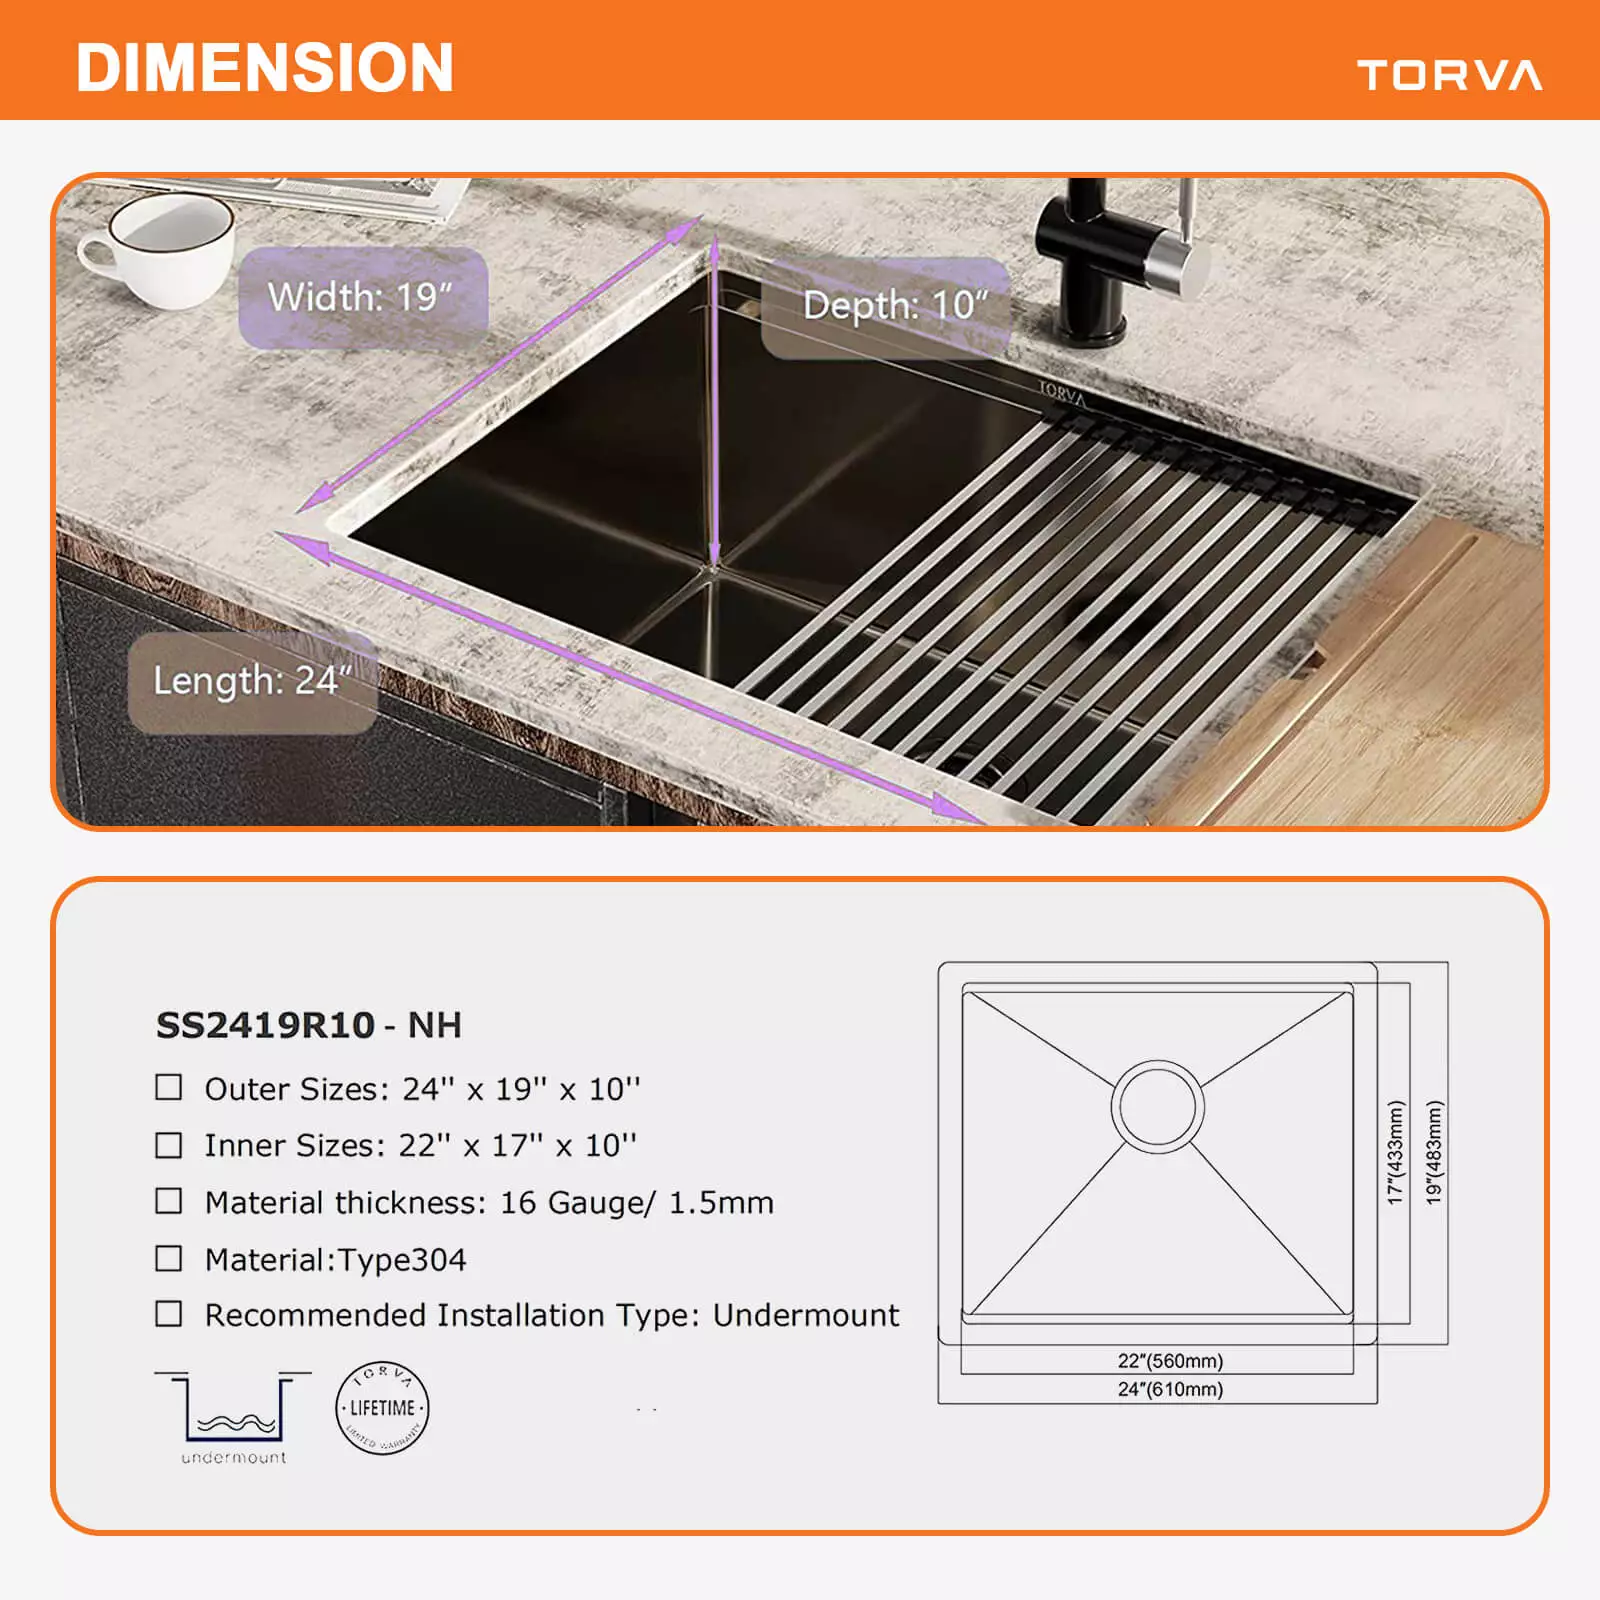 torva-24-inch-workstation-undermount-kitchen-sink-size